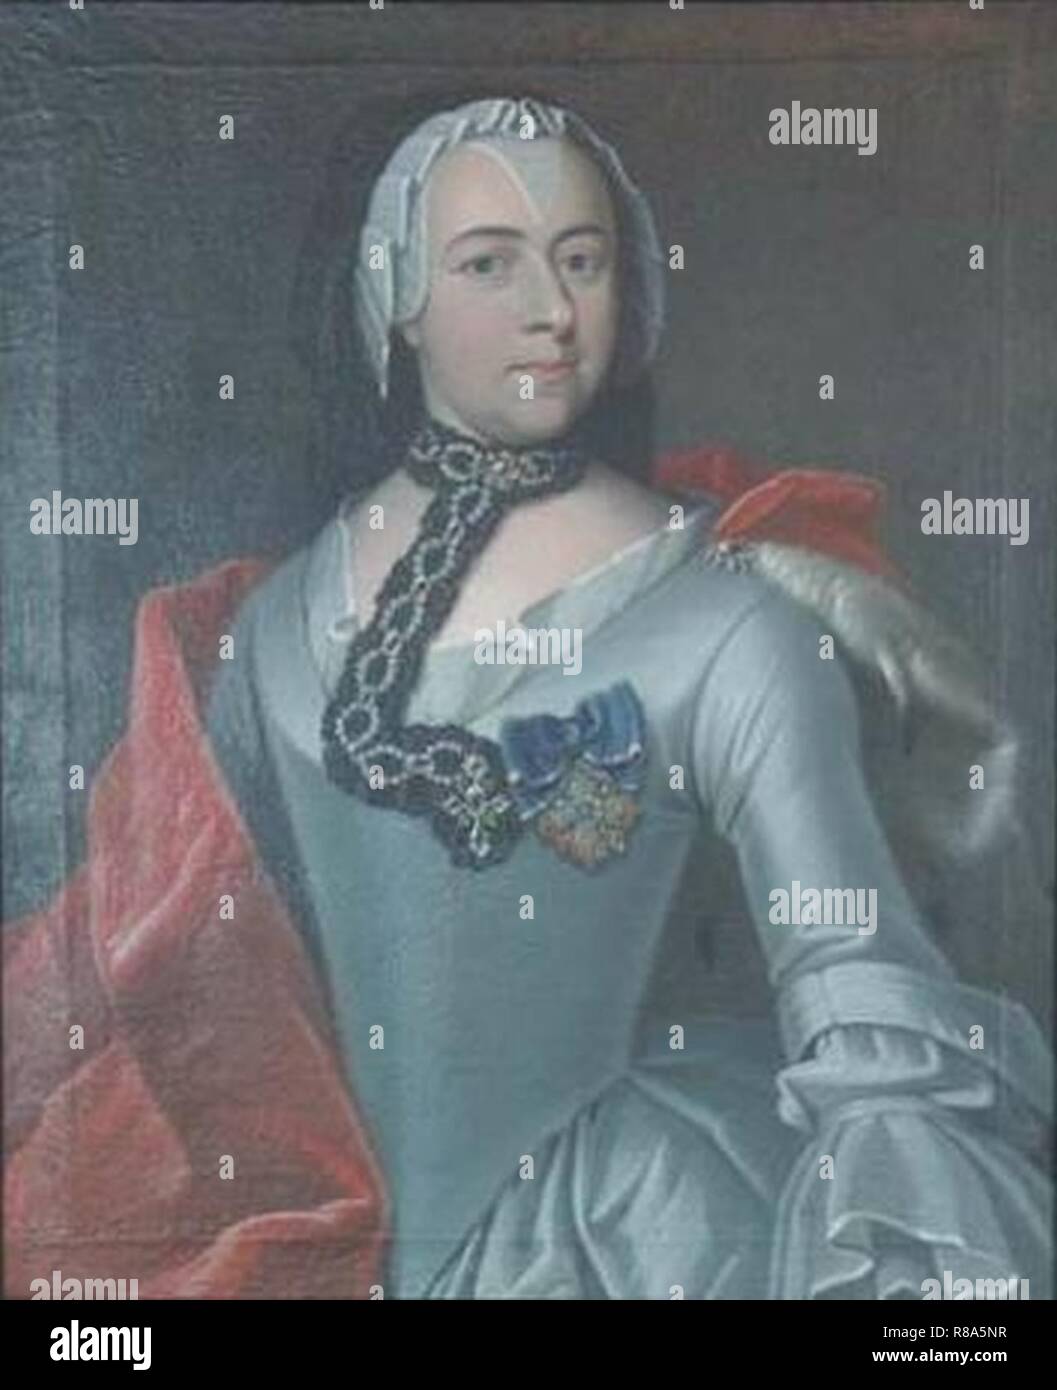 Caroline of Erbach-Fürstenau duchess of Saxe-Hildburghausen. Stock Photo